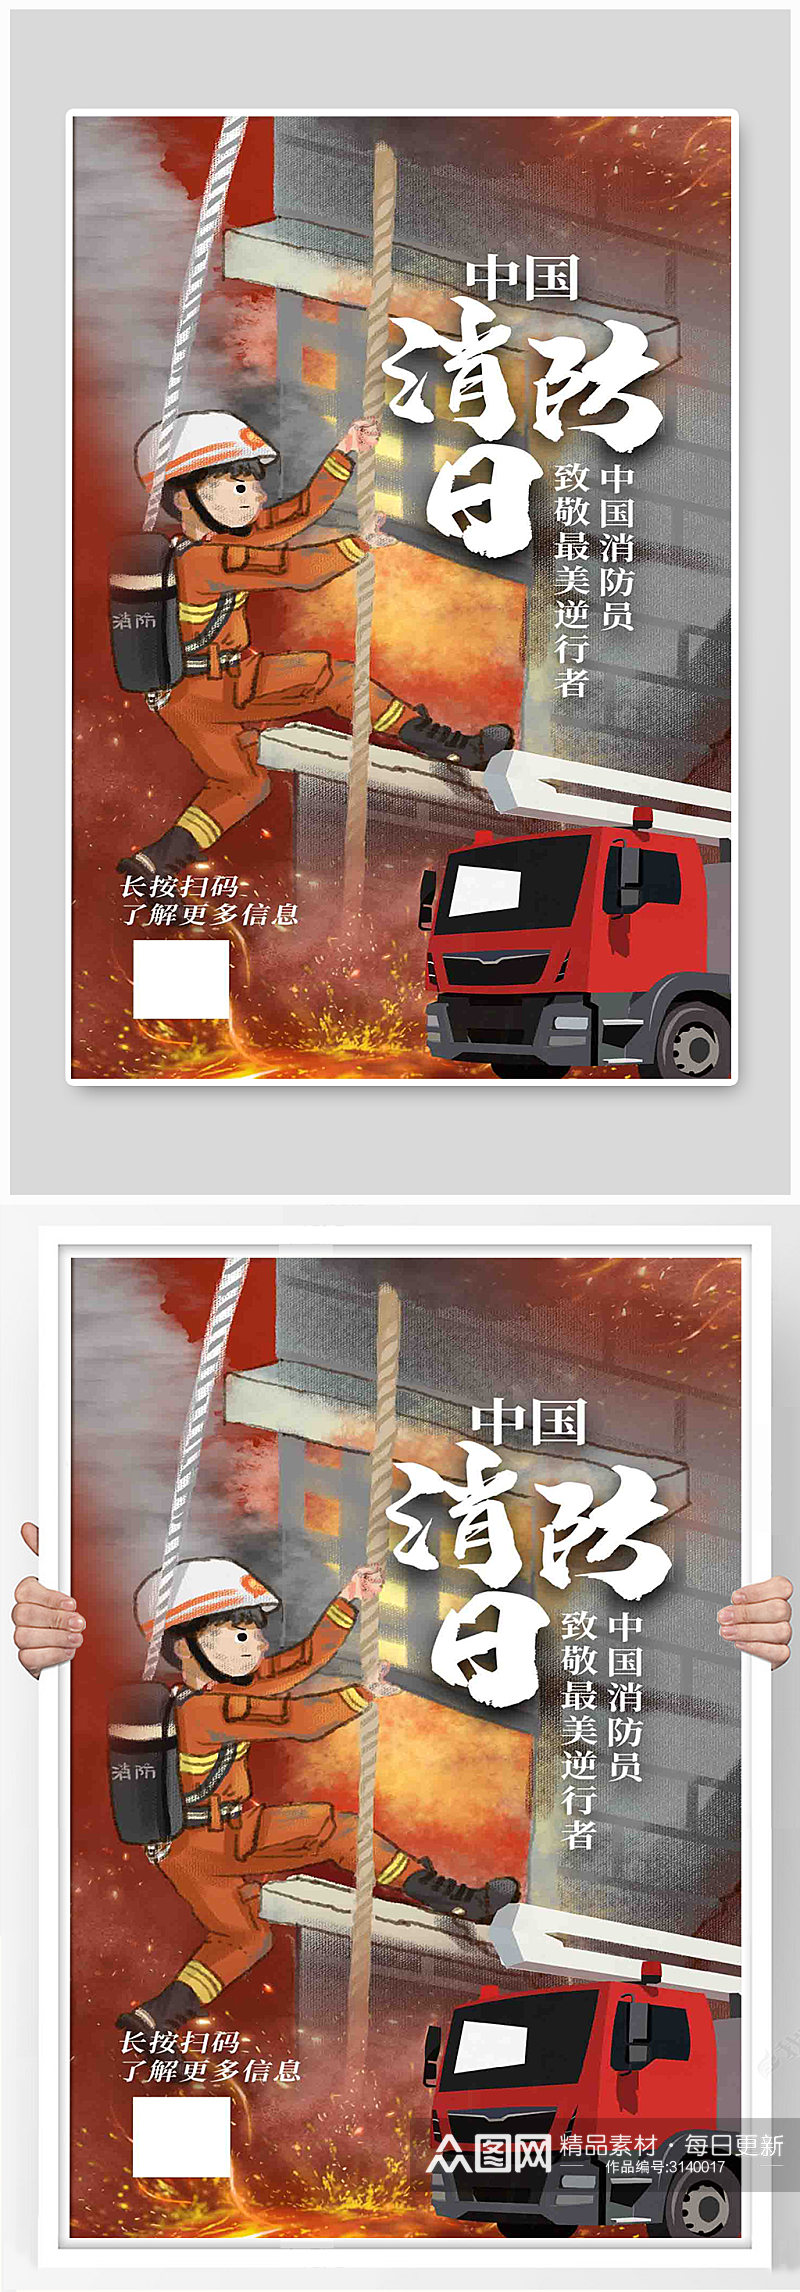 中国消防日消防员红色卡通海报素材